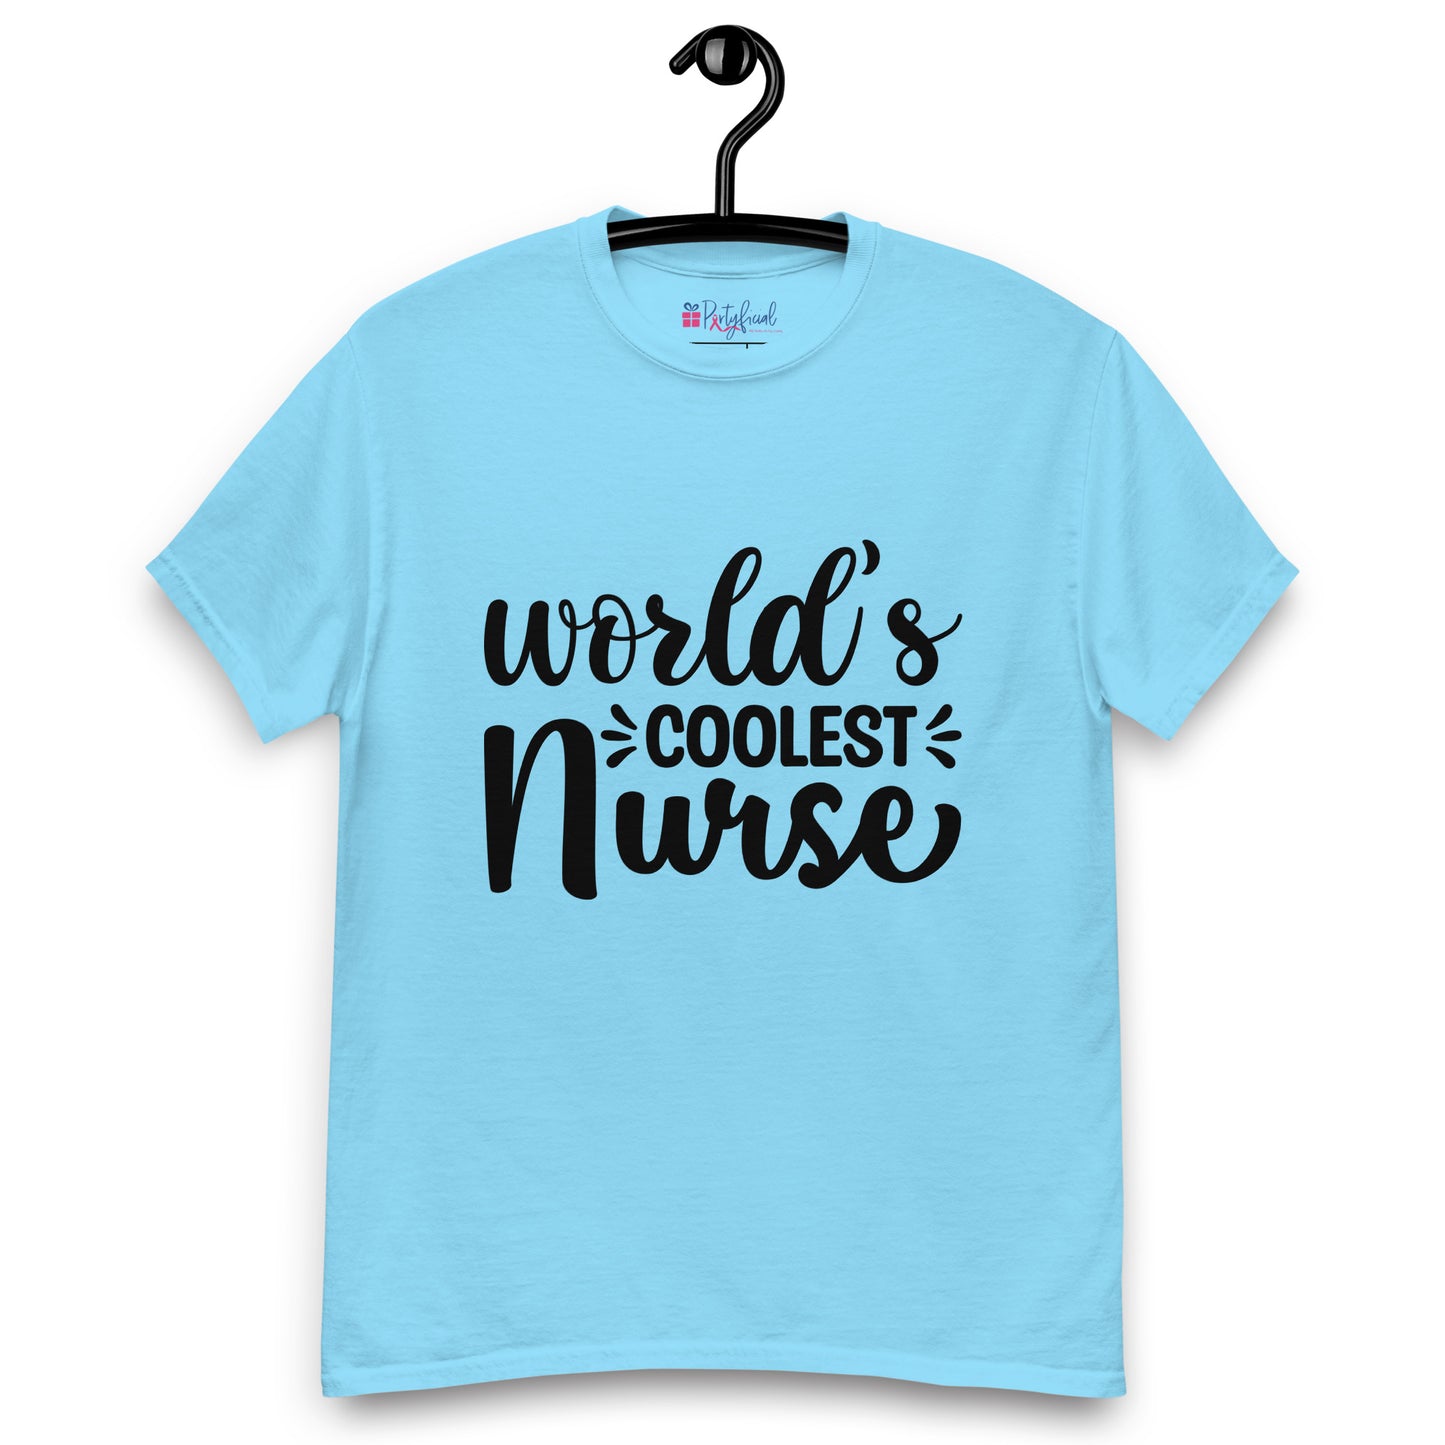 World's Coolest Nurse tee